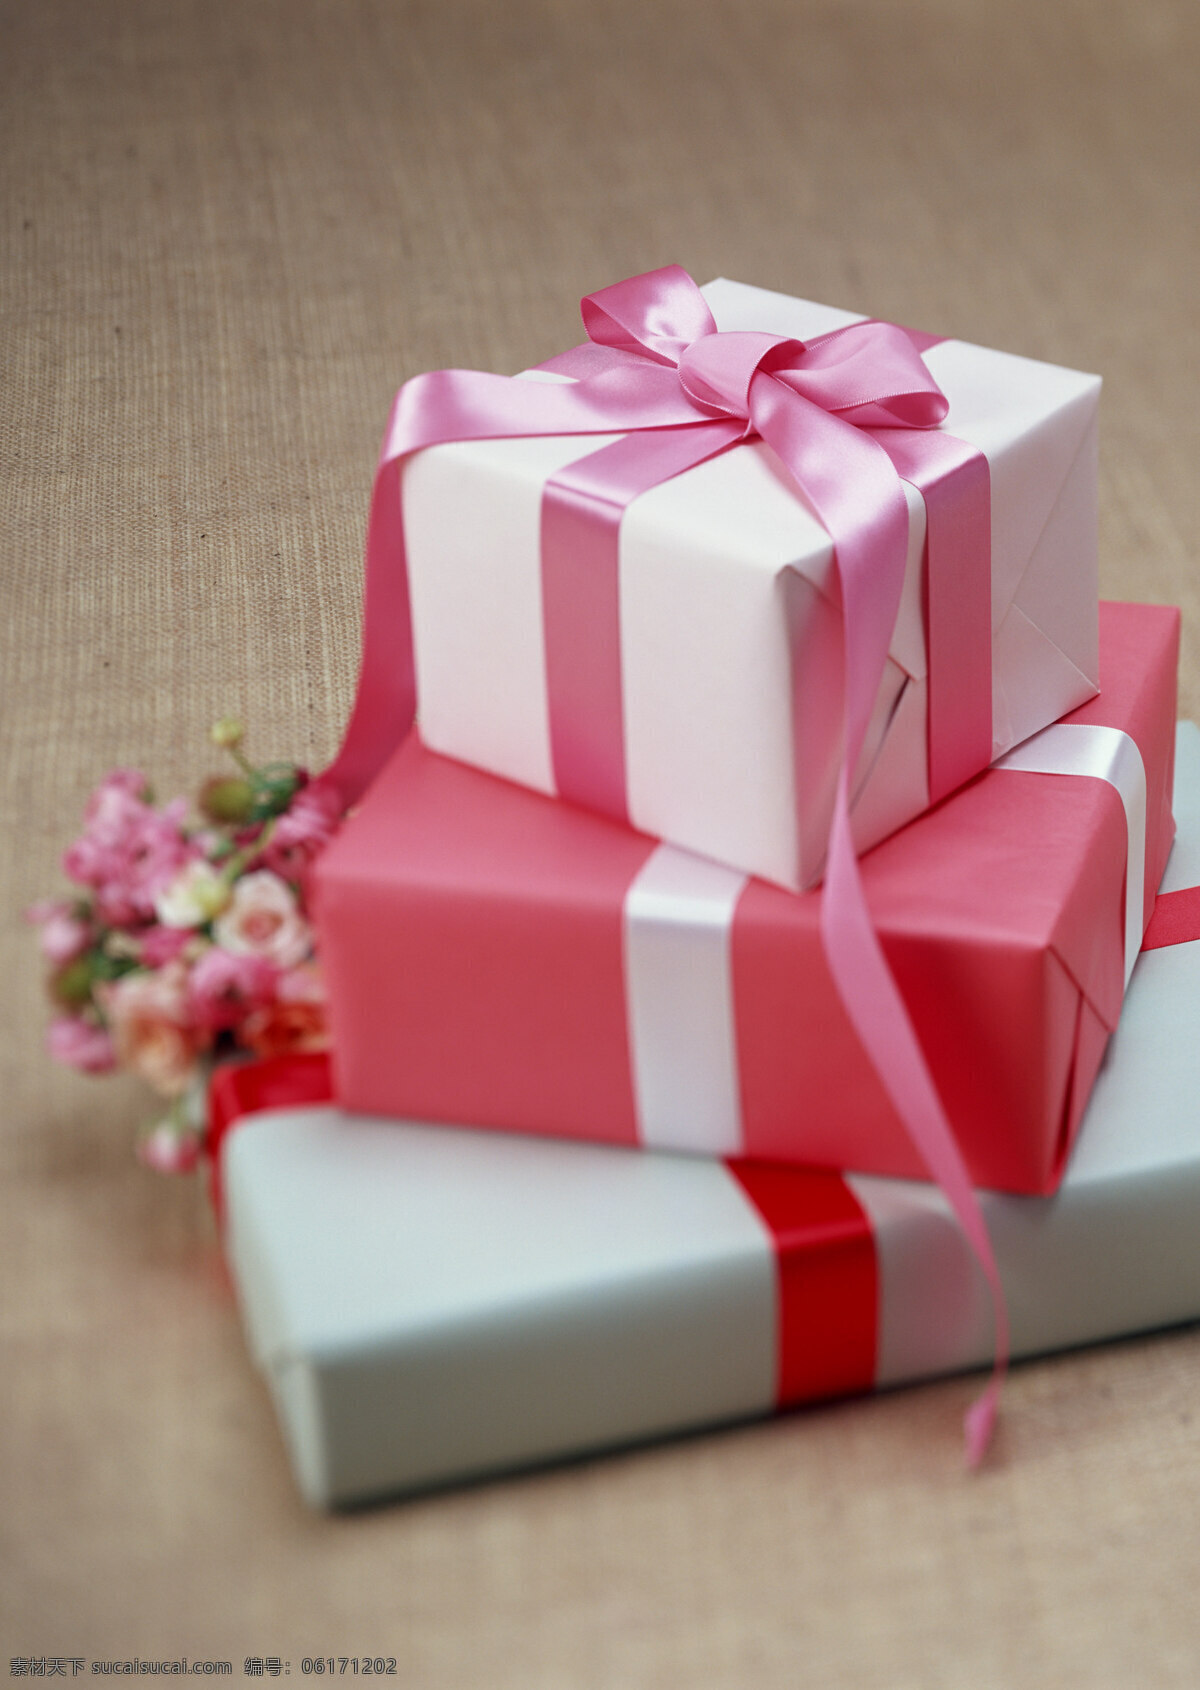 精美的礼物 礼物盒 圣诞礼物 礼物包装 礼品 礼品包装 生活百科 生活素材